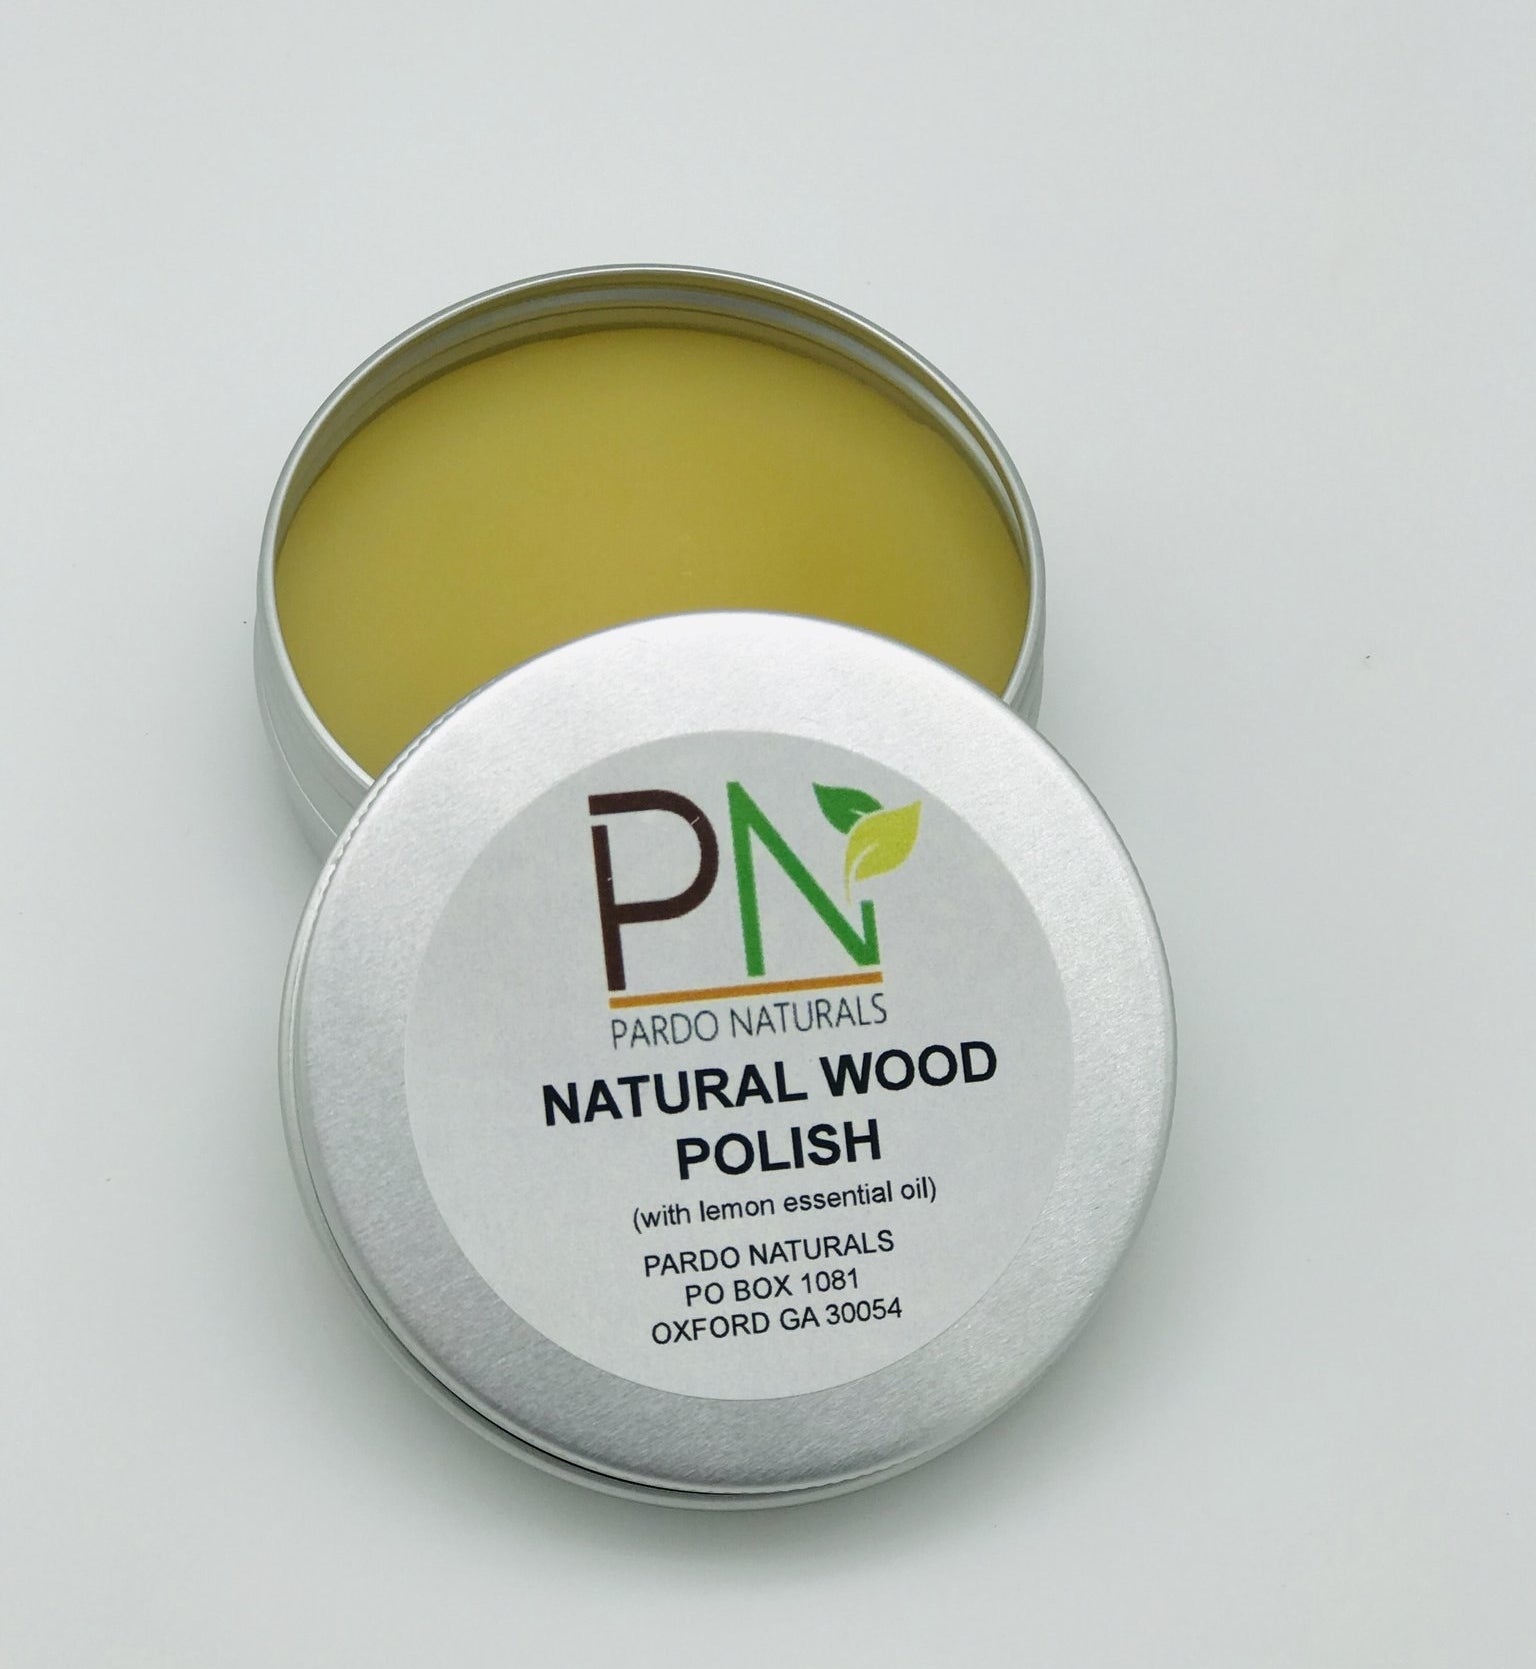 a tin of natural wood polish from pardo naturals